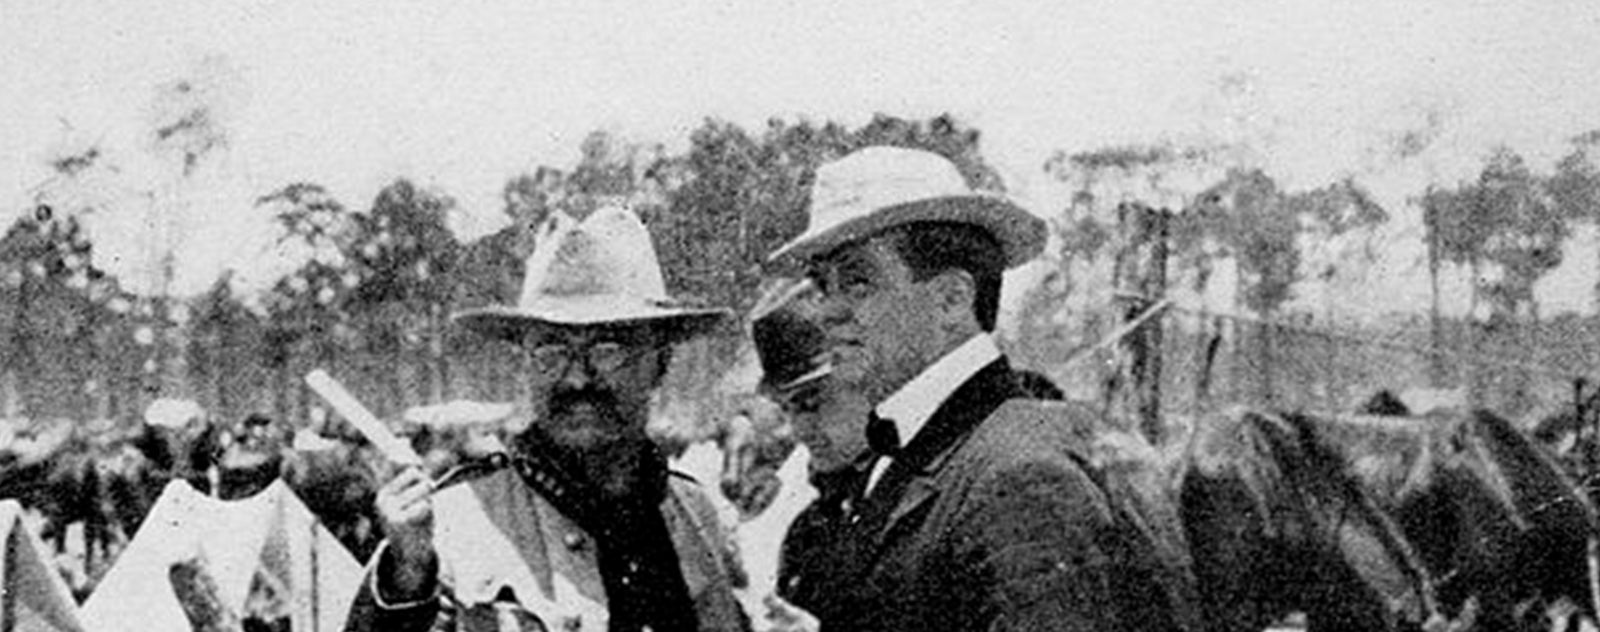 Visite au canal de Panama en 1906 Président Roosevelt